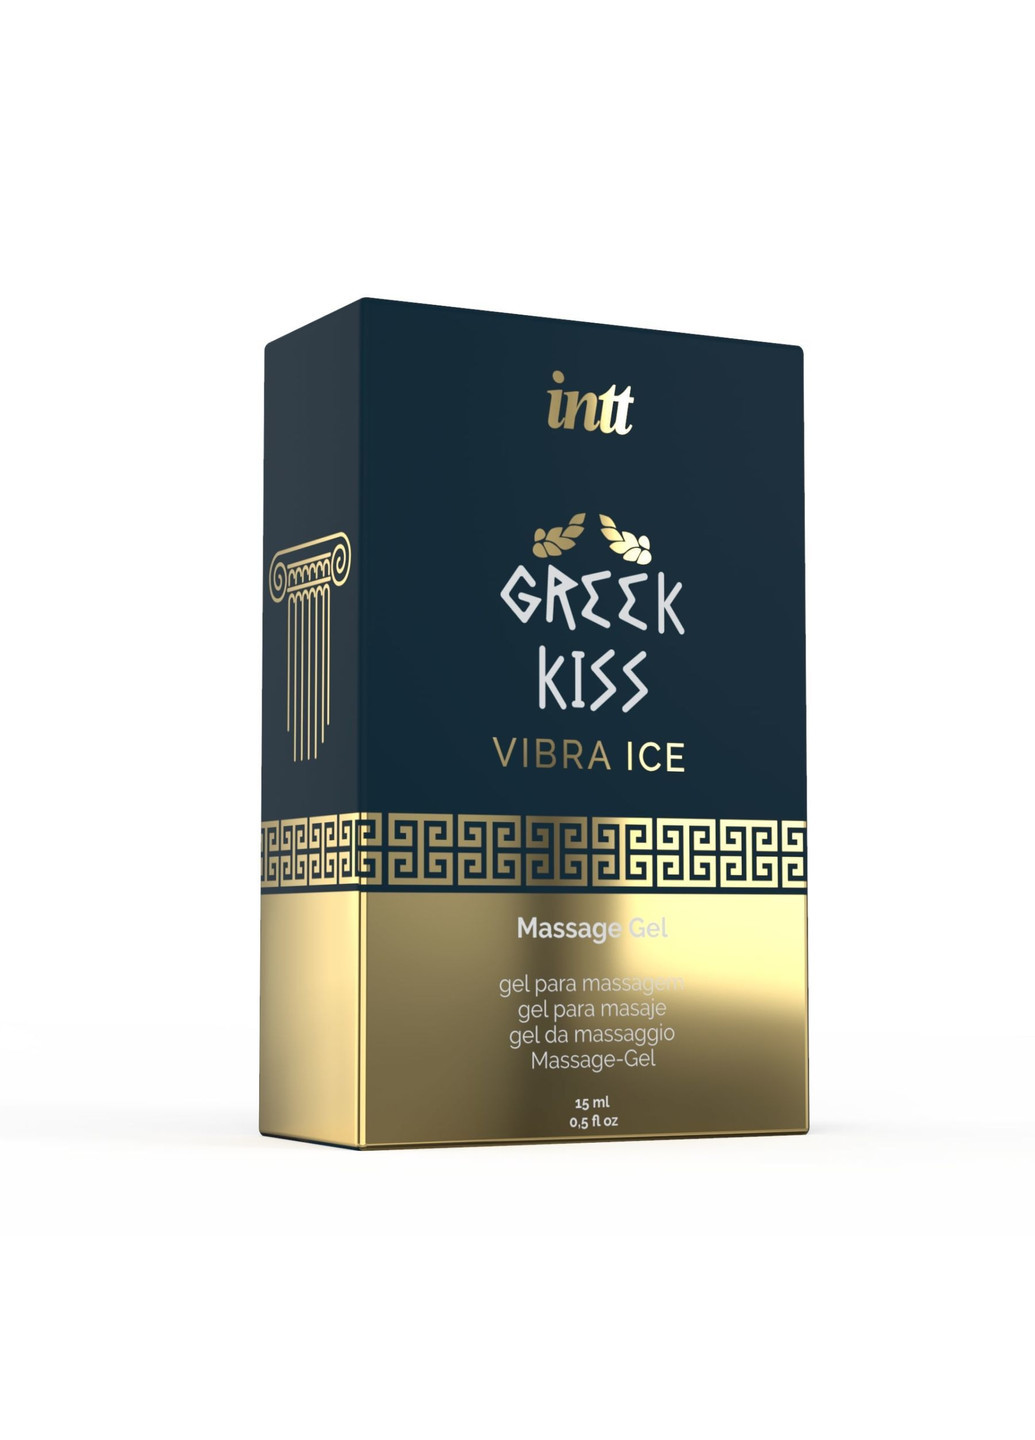 Стимулирующий гель для анилингуса, римминга и анального секса Greek Kiss (15 мл) Intt (251851891)